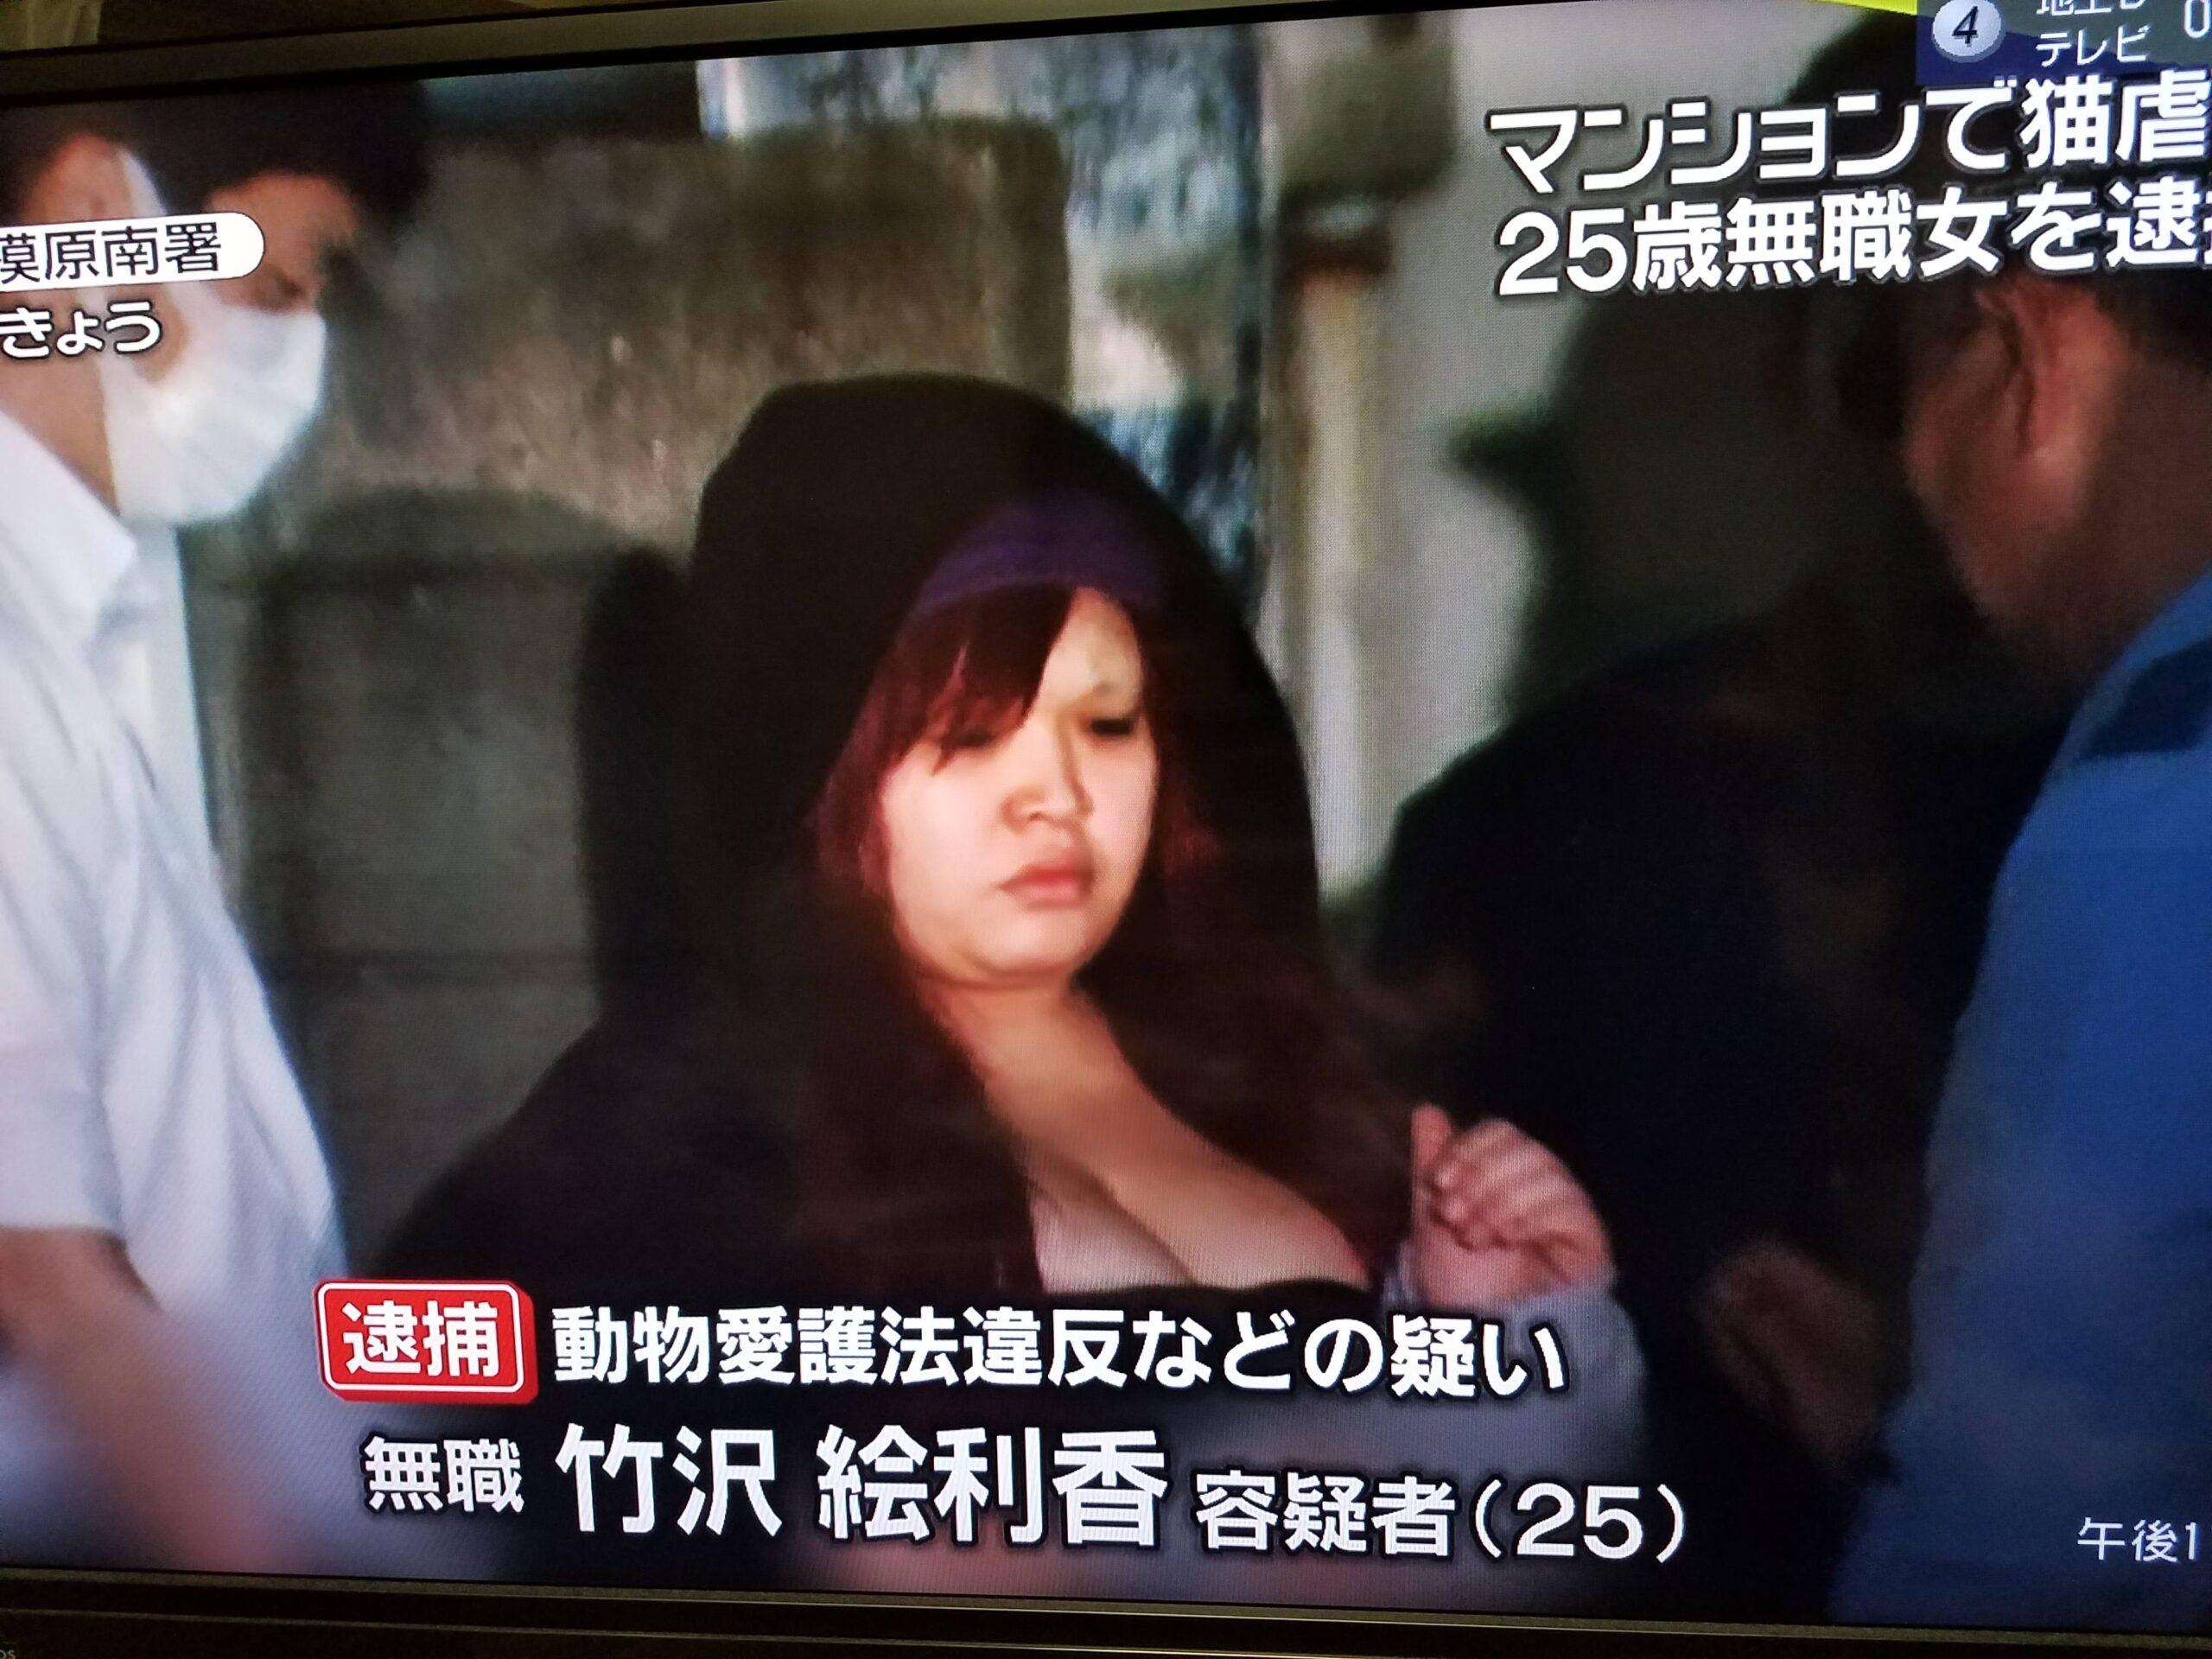 【画像】猫虐待で逮捕されたまんさん(25)のご尊顔www